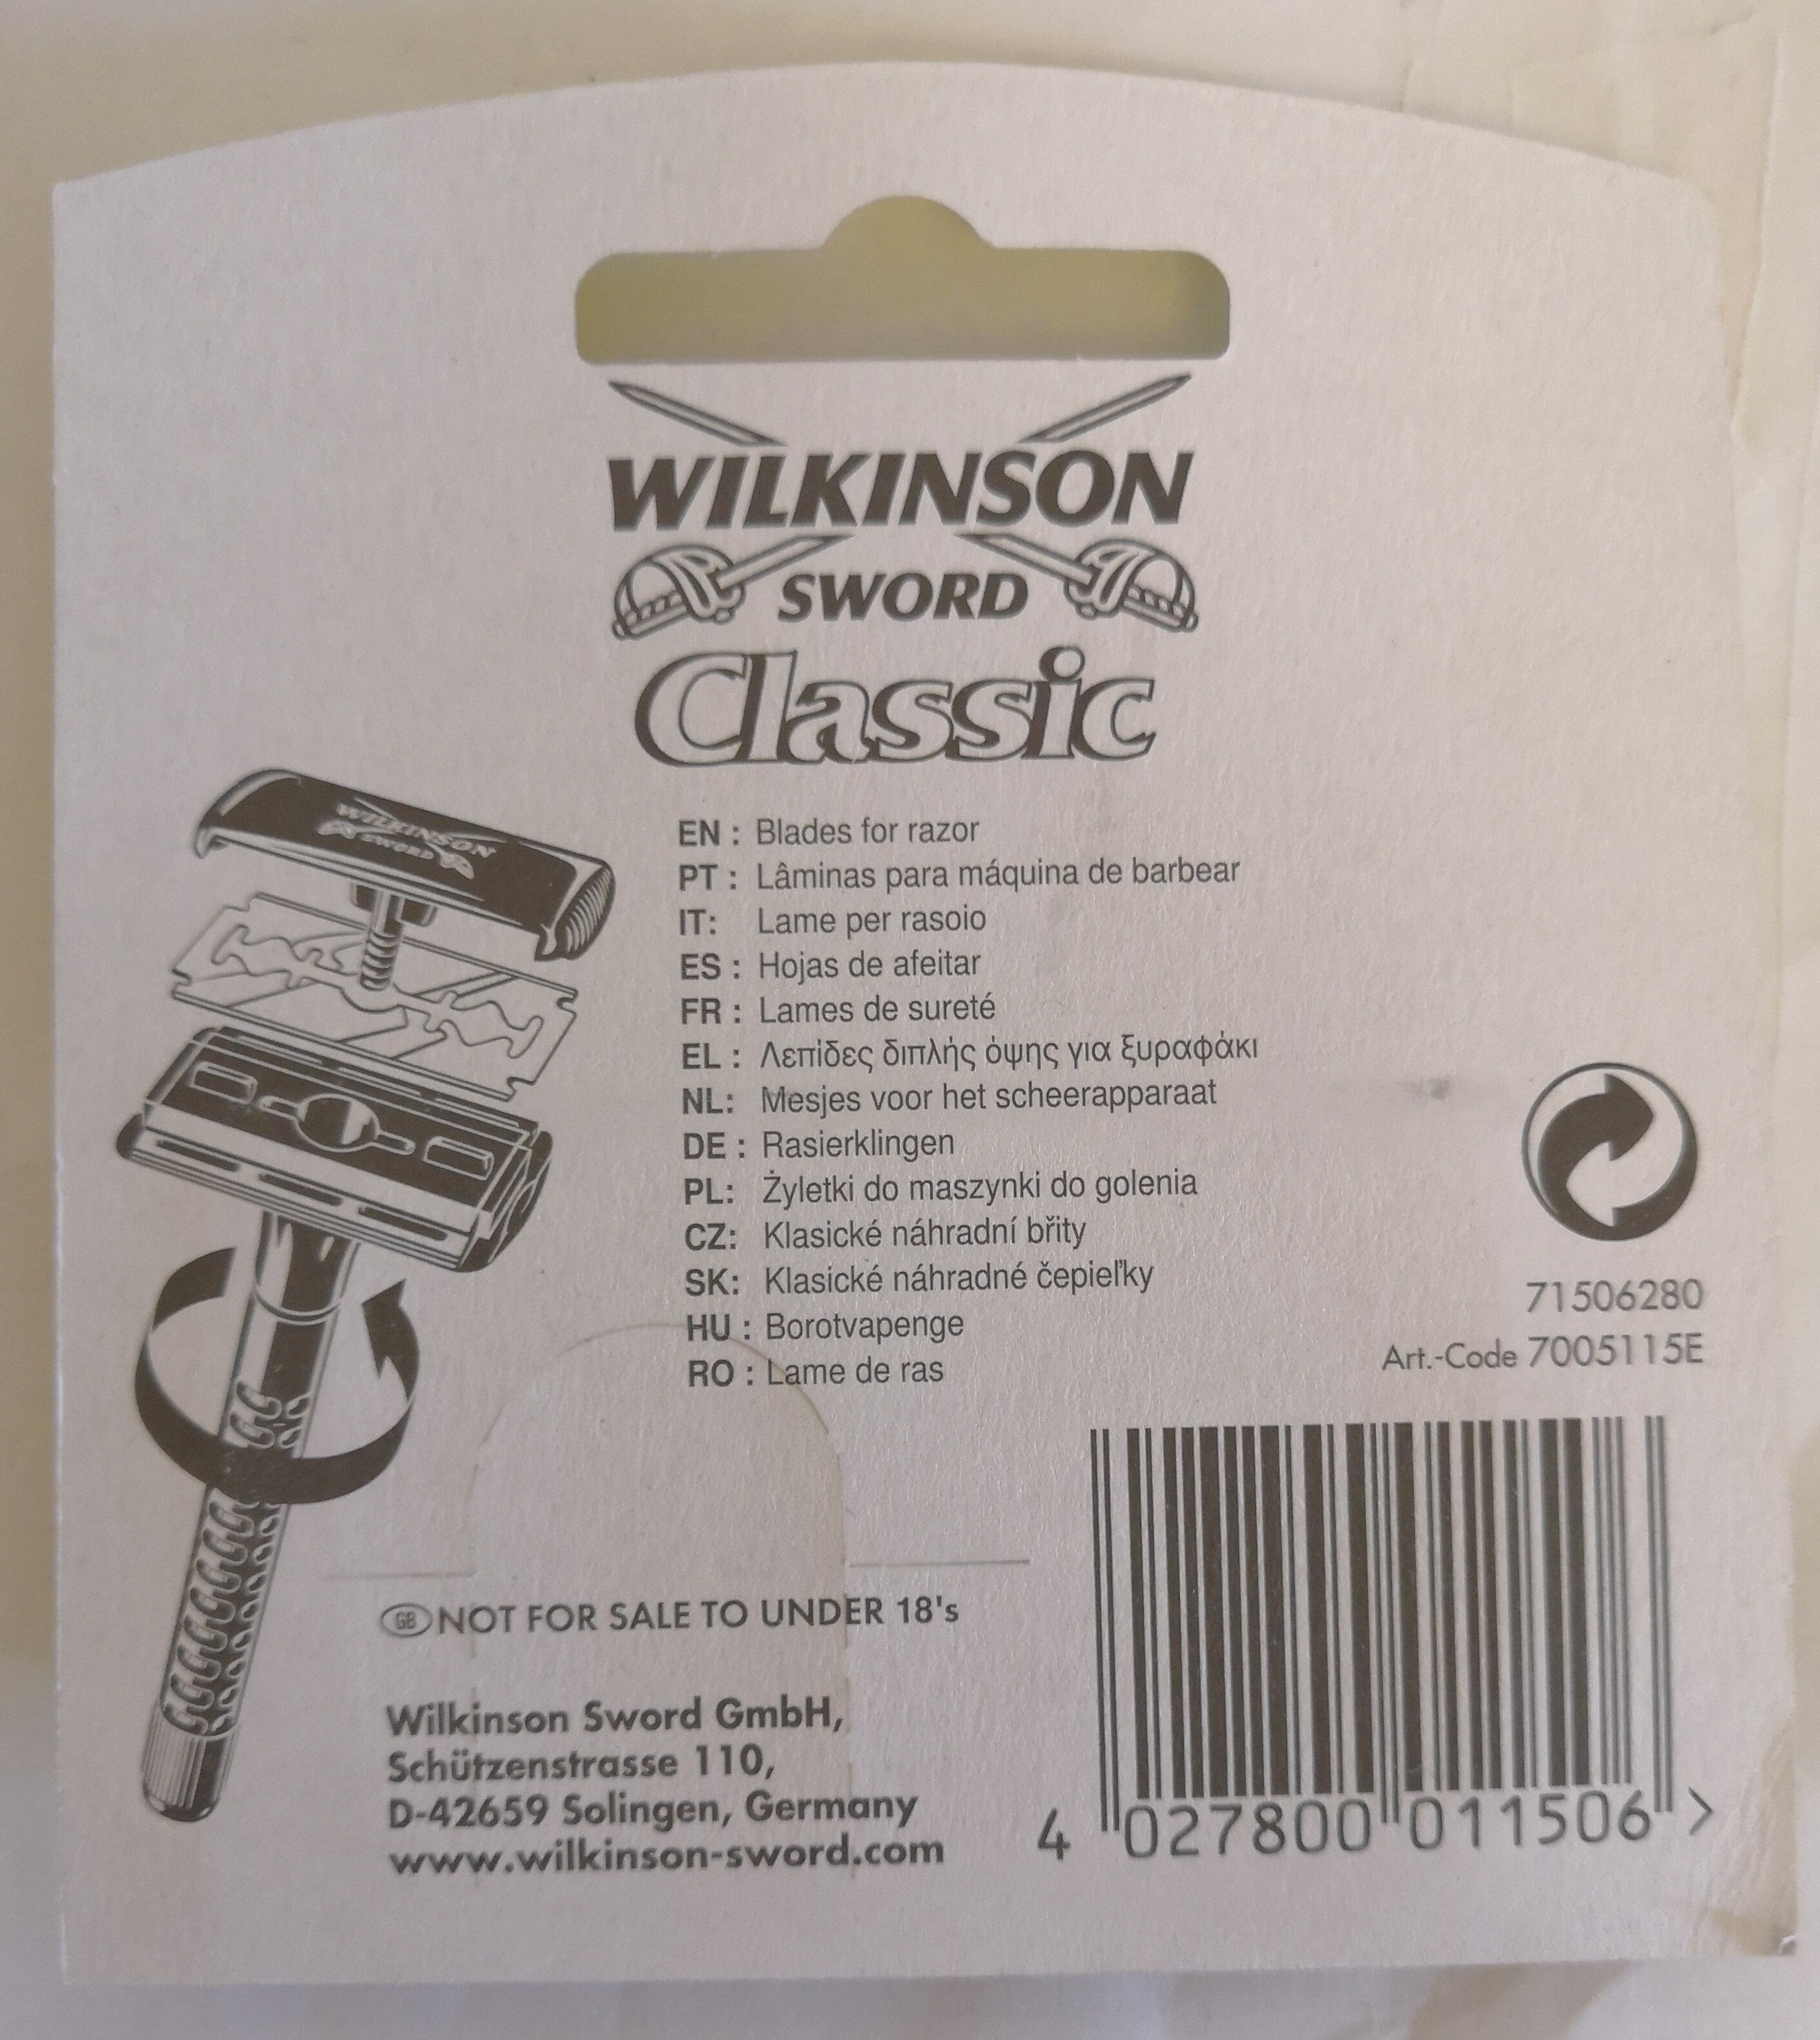 Wilkinson Sword Classic Rasierklingen - Ingredients - de